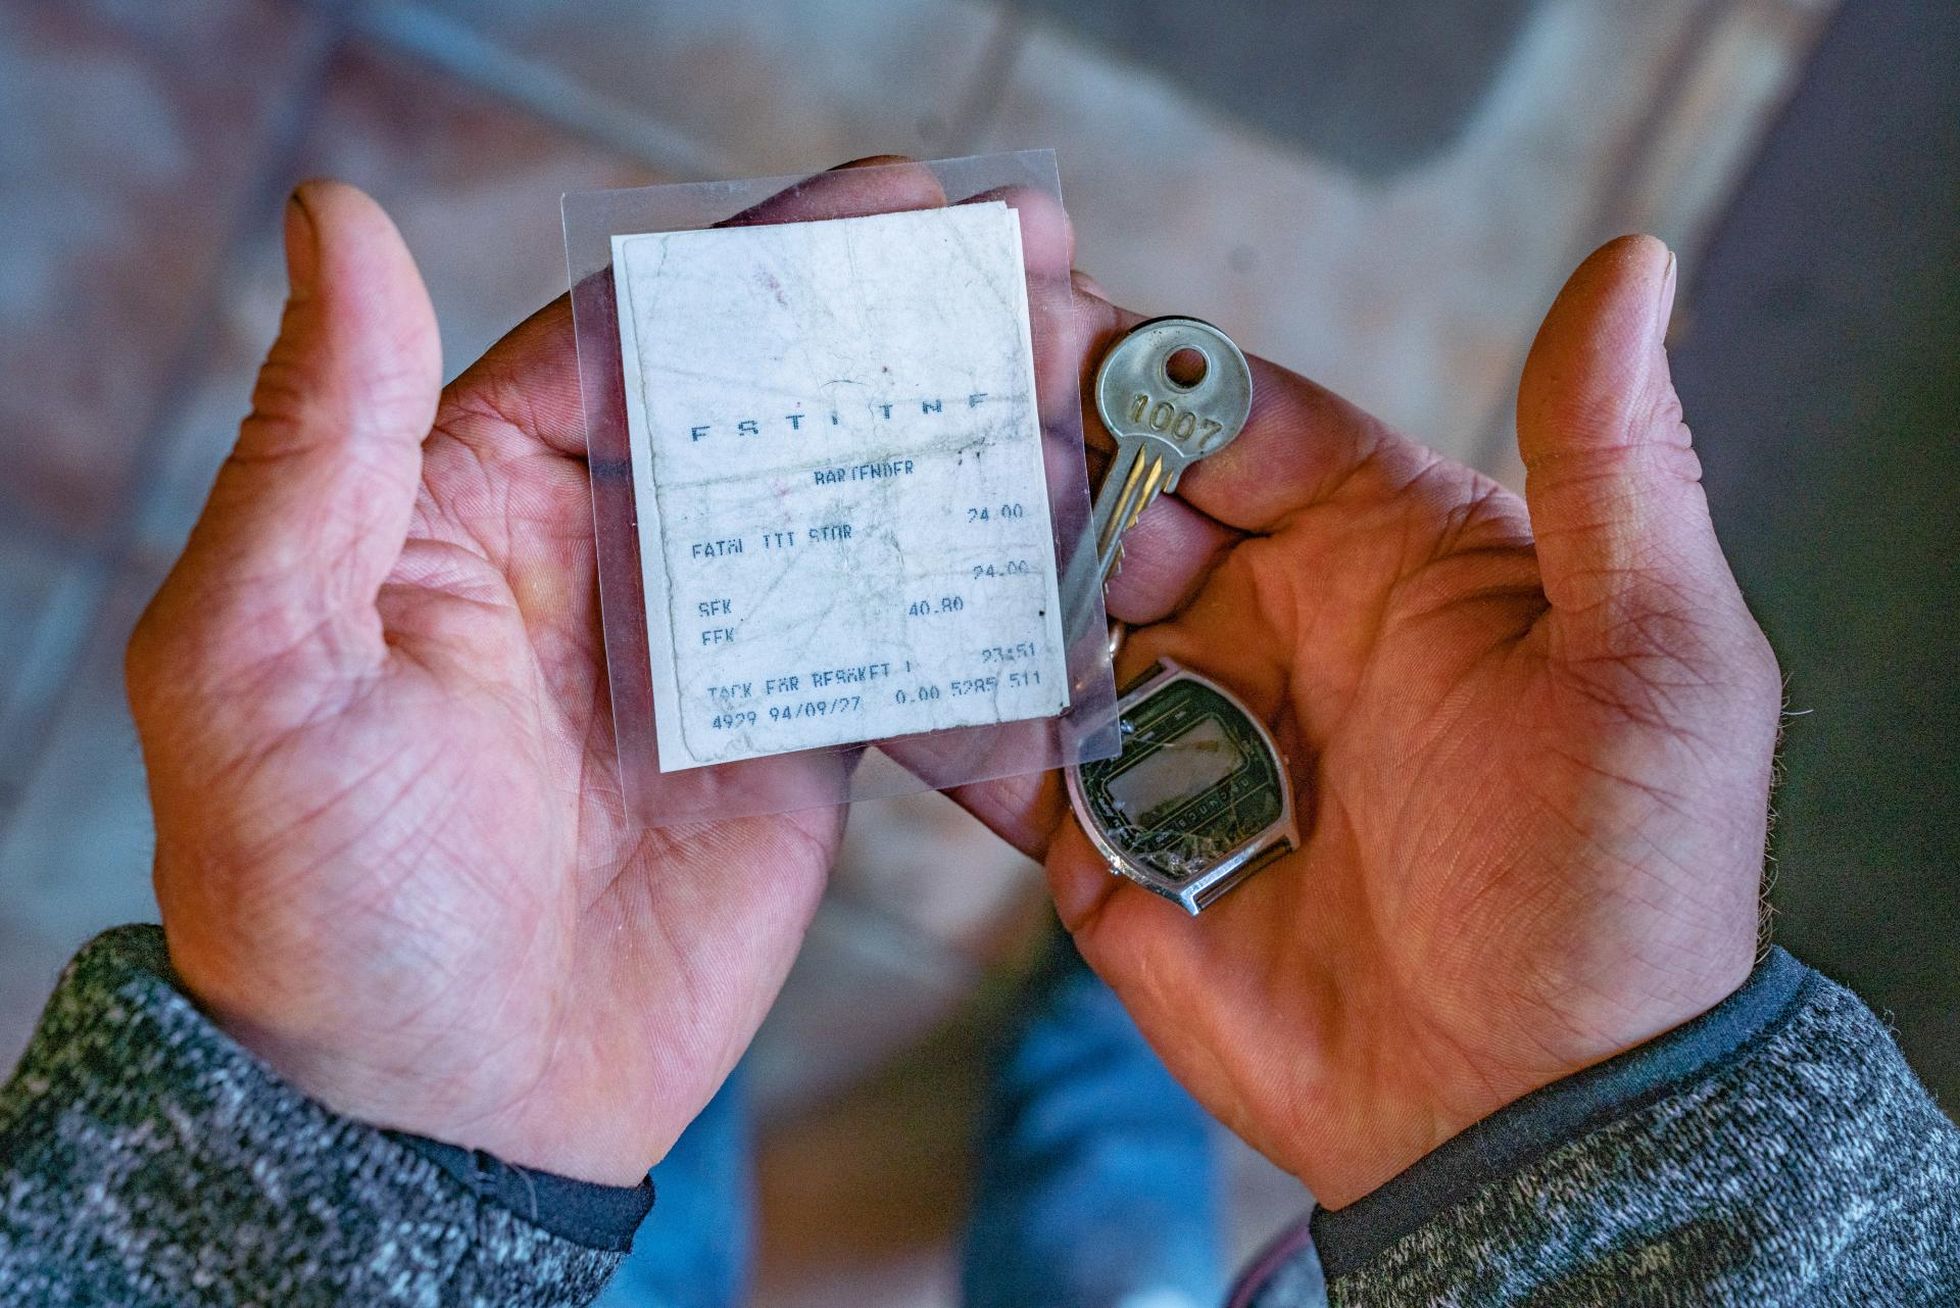 Вельо показывает вещи, сохранившиеся в кармане его джинсов при крушении "Эстонии": чек за пиво, ключ от каюты и наручные часы. 